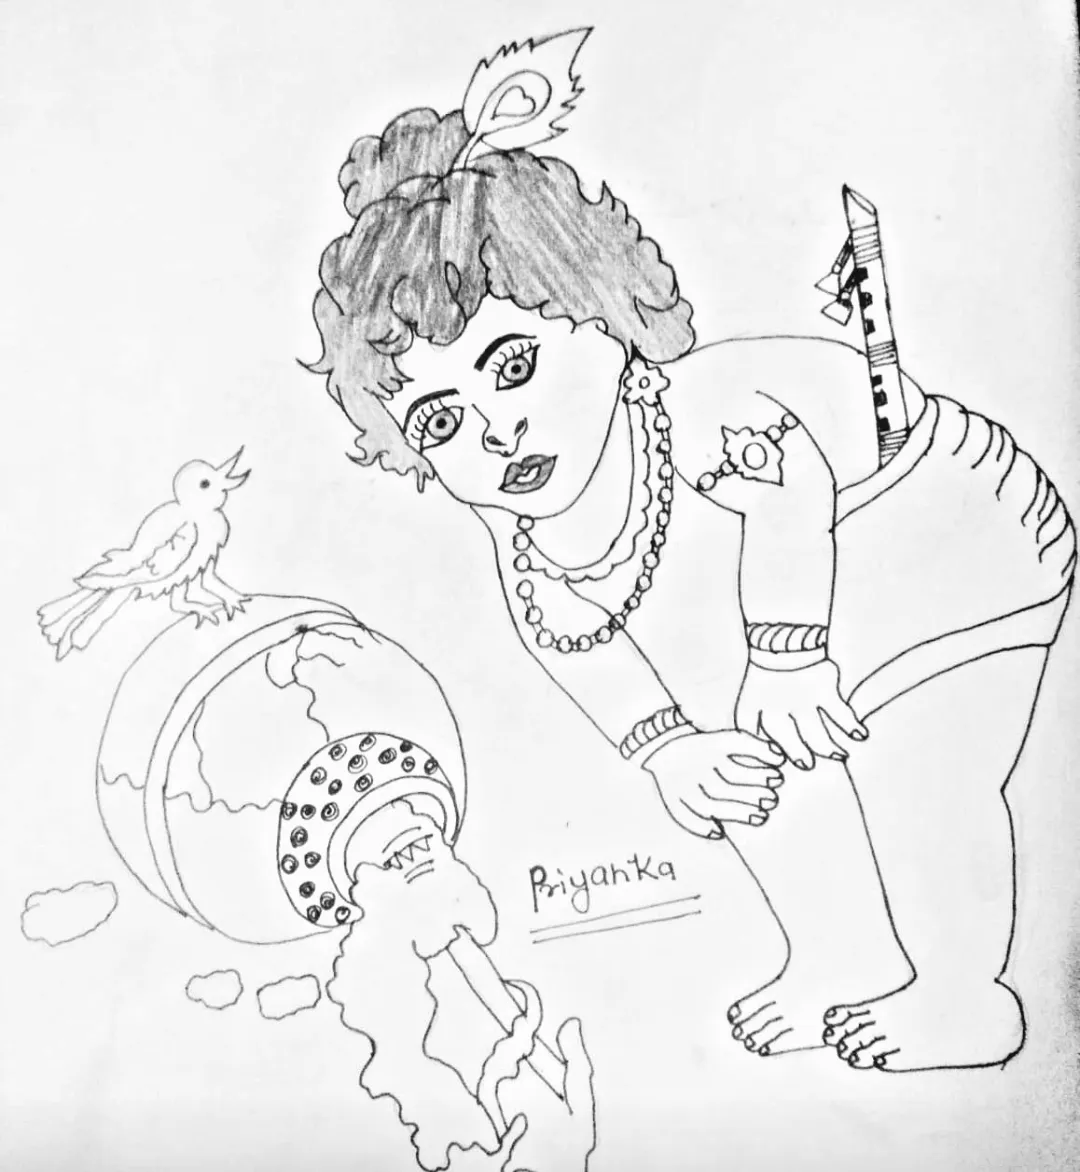 Fine Arts Guruji - Easy krishna drawing by Fine Arts Guruji ☺️New Krishna  Drawing 👇 https://fb.watch/4l96Wh1u5n/ Enjoy!!! Stay Connected.  ✌𝓘𝓷𝓼𝓽𝓪𝓰𝓻𝓪𝓶🥰 https://www.instagram.com/fineartsguruji  😍𝗙𝗮𝗰𝗲𝗯𝗼𝗼𝗸🕺 https://www.facebook.com ...